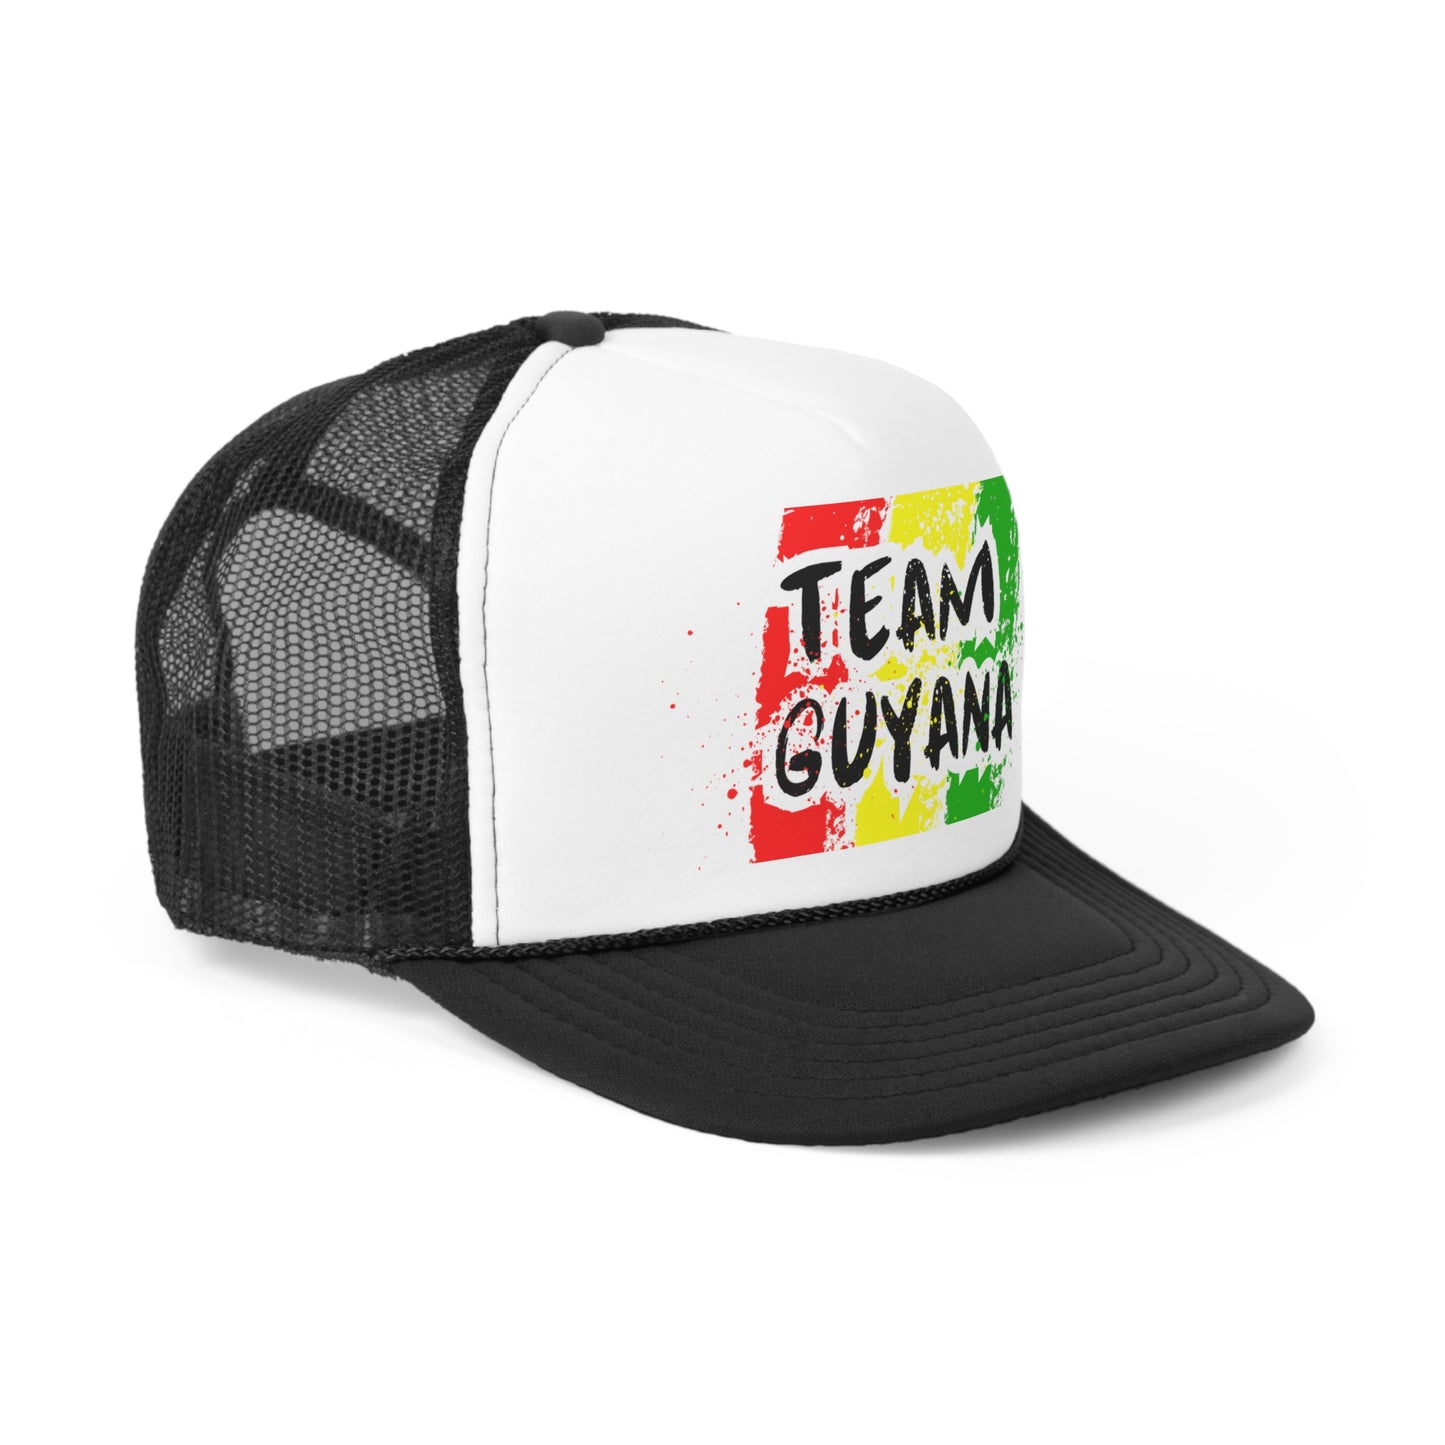 Team Guyana Trucker Caps